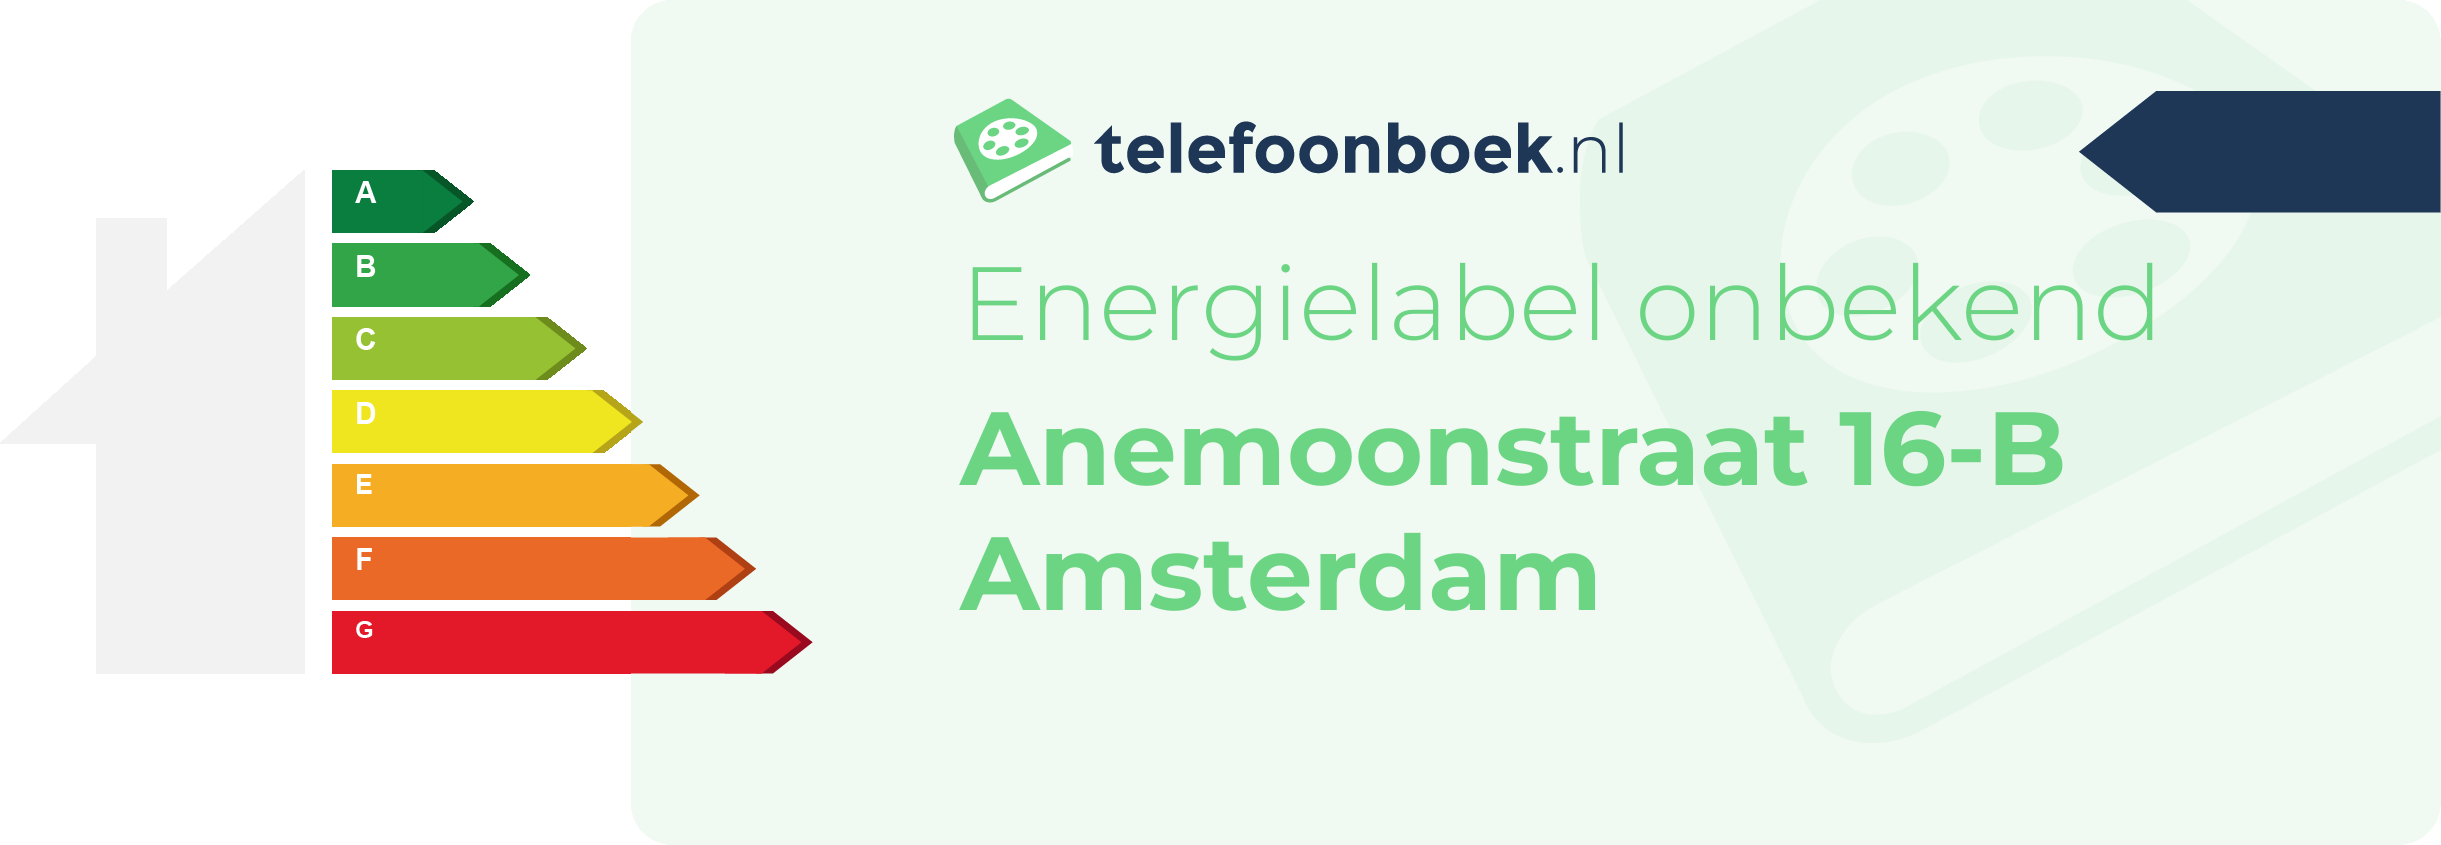 Energielabel Anemoonstraat 16-B Amsterdam